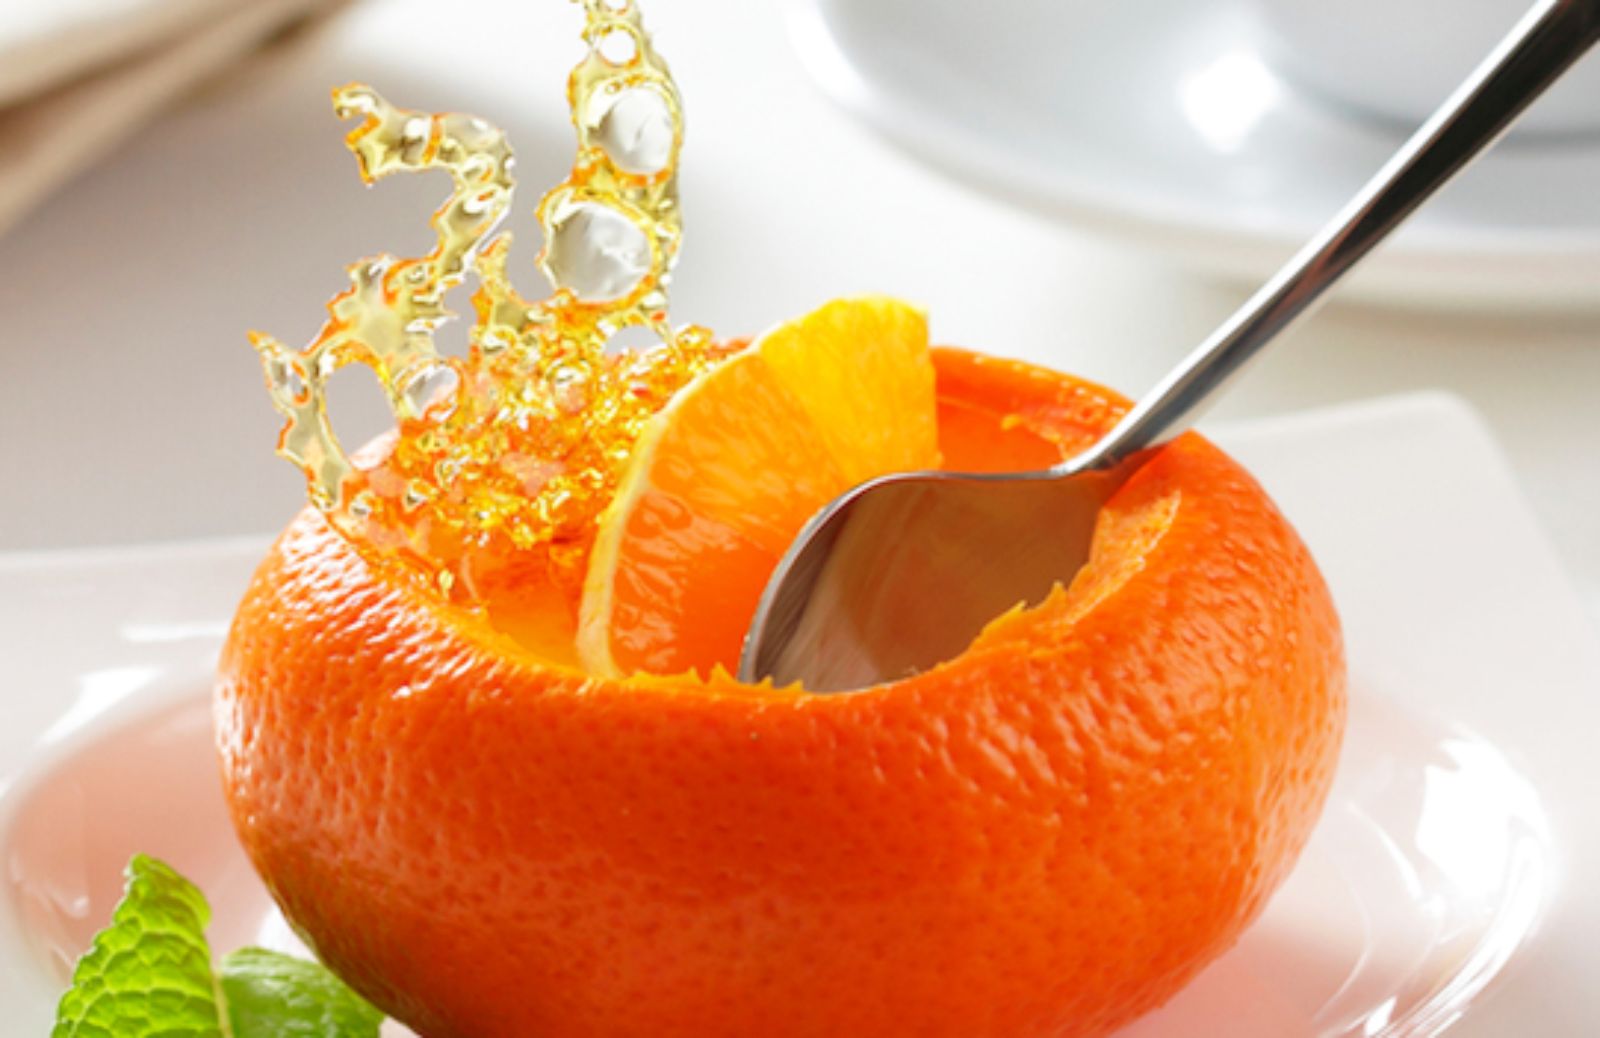 Come fare i mandarini ripieni